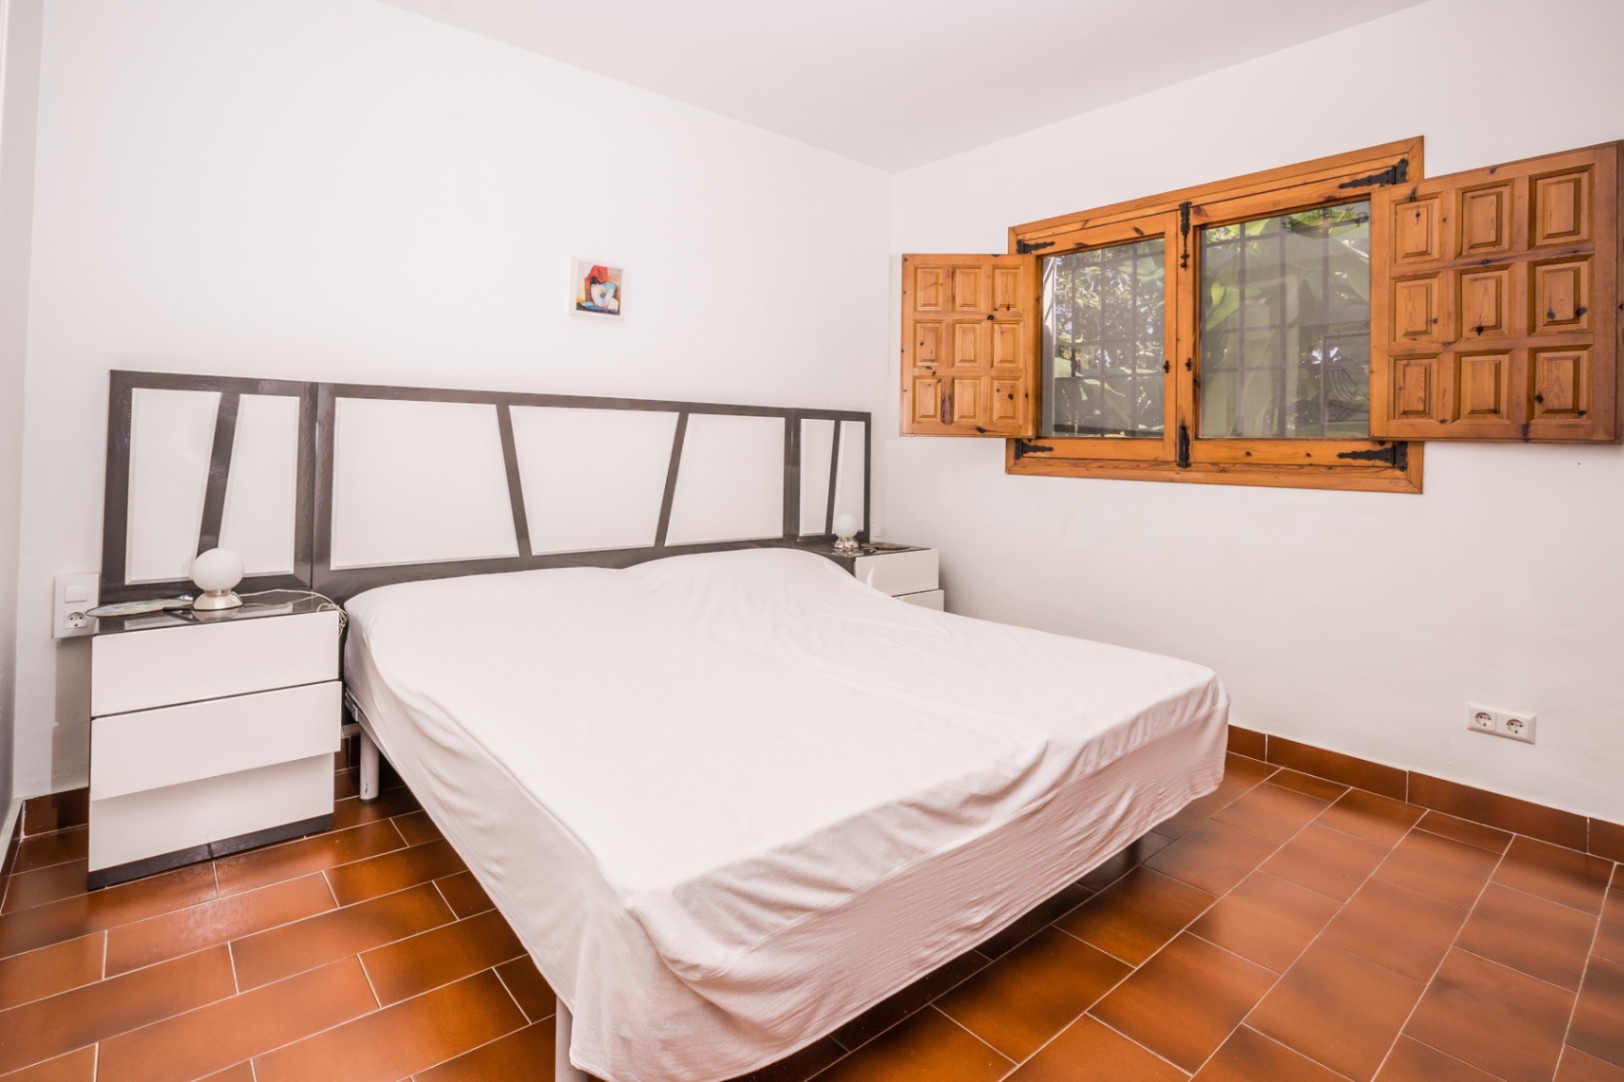 Impressionant propietat de 5 dormitoris a la venda al Tossalet Xàbia